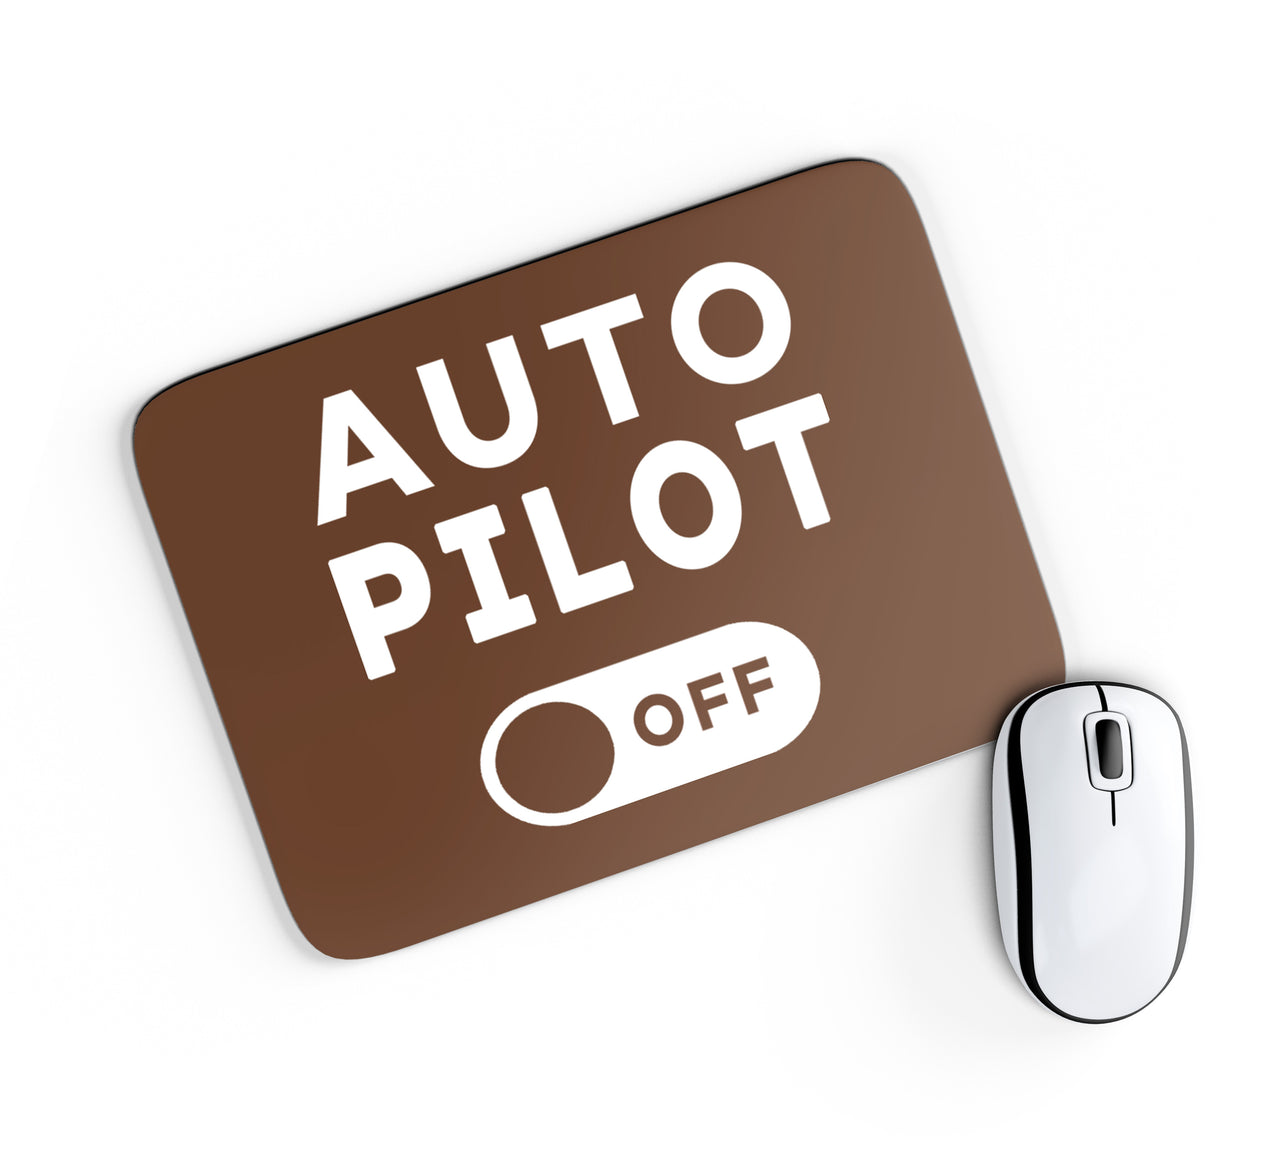 Auto Pilot Off Designed Mouse Pads